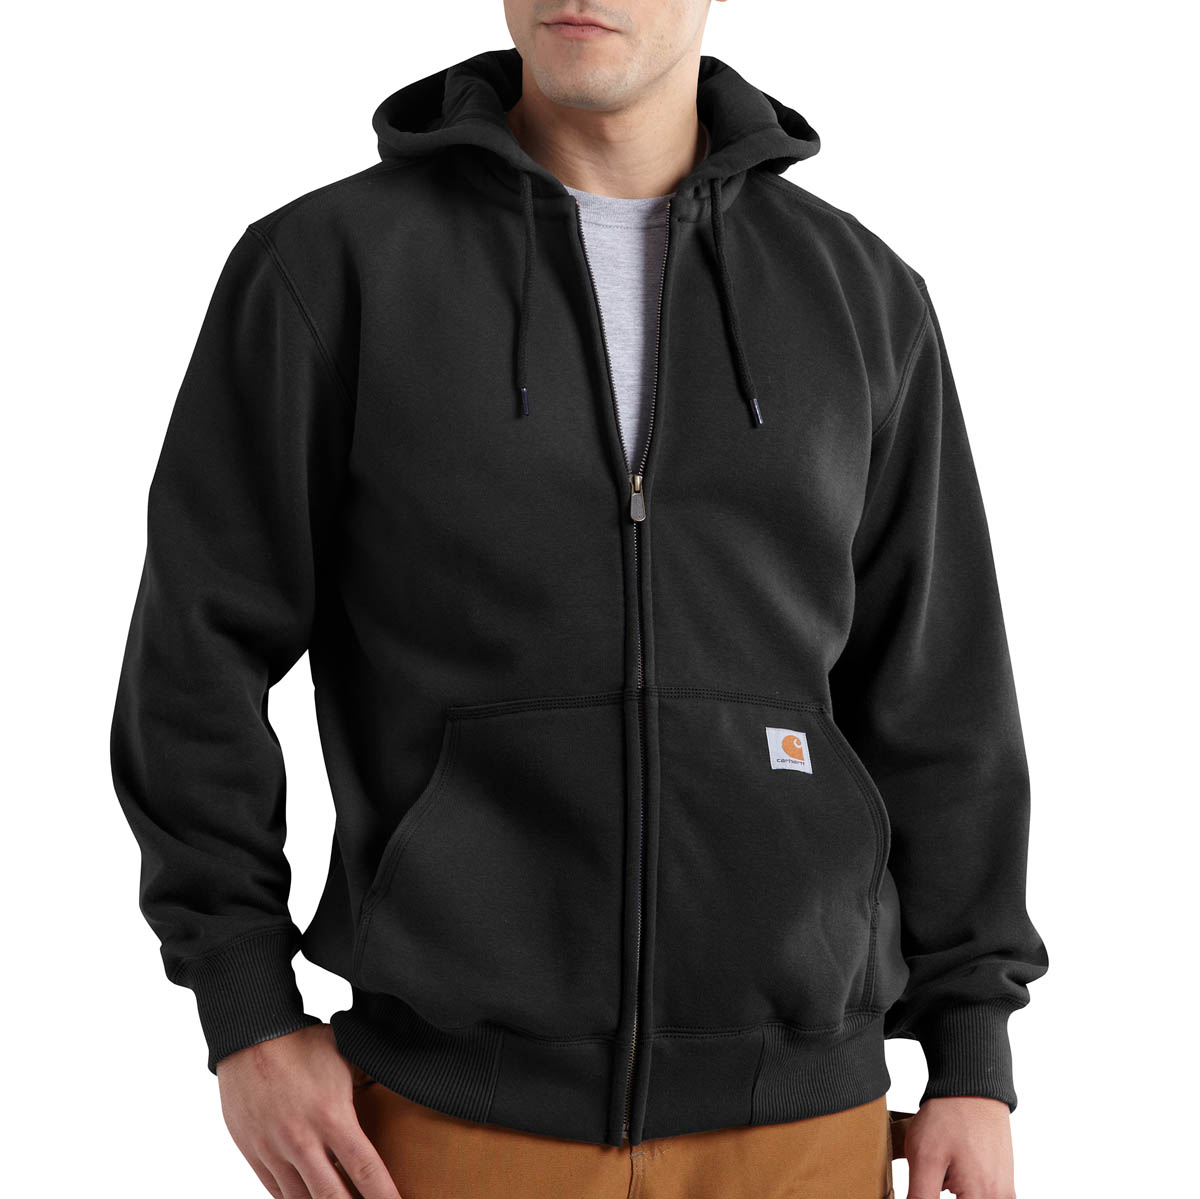 zipper for carhartt jacket